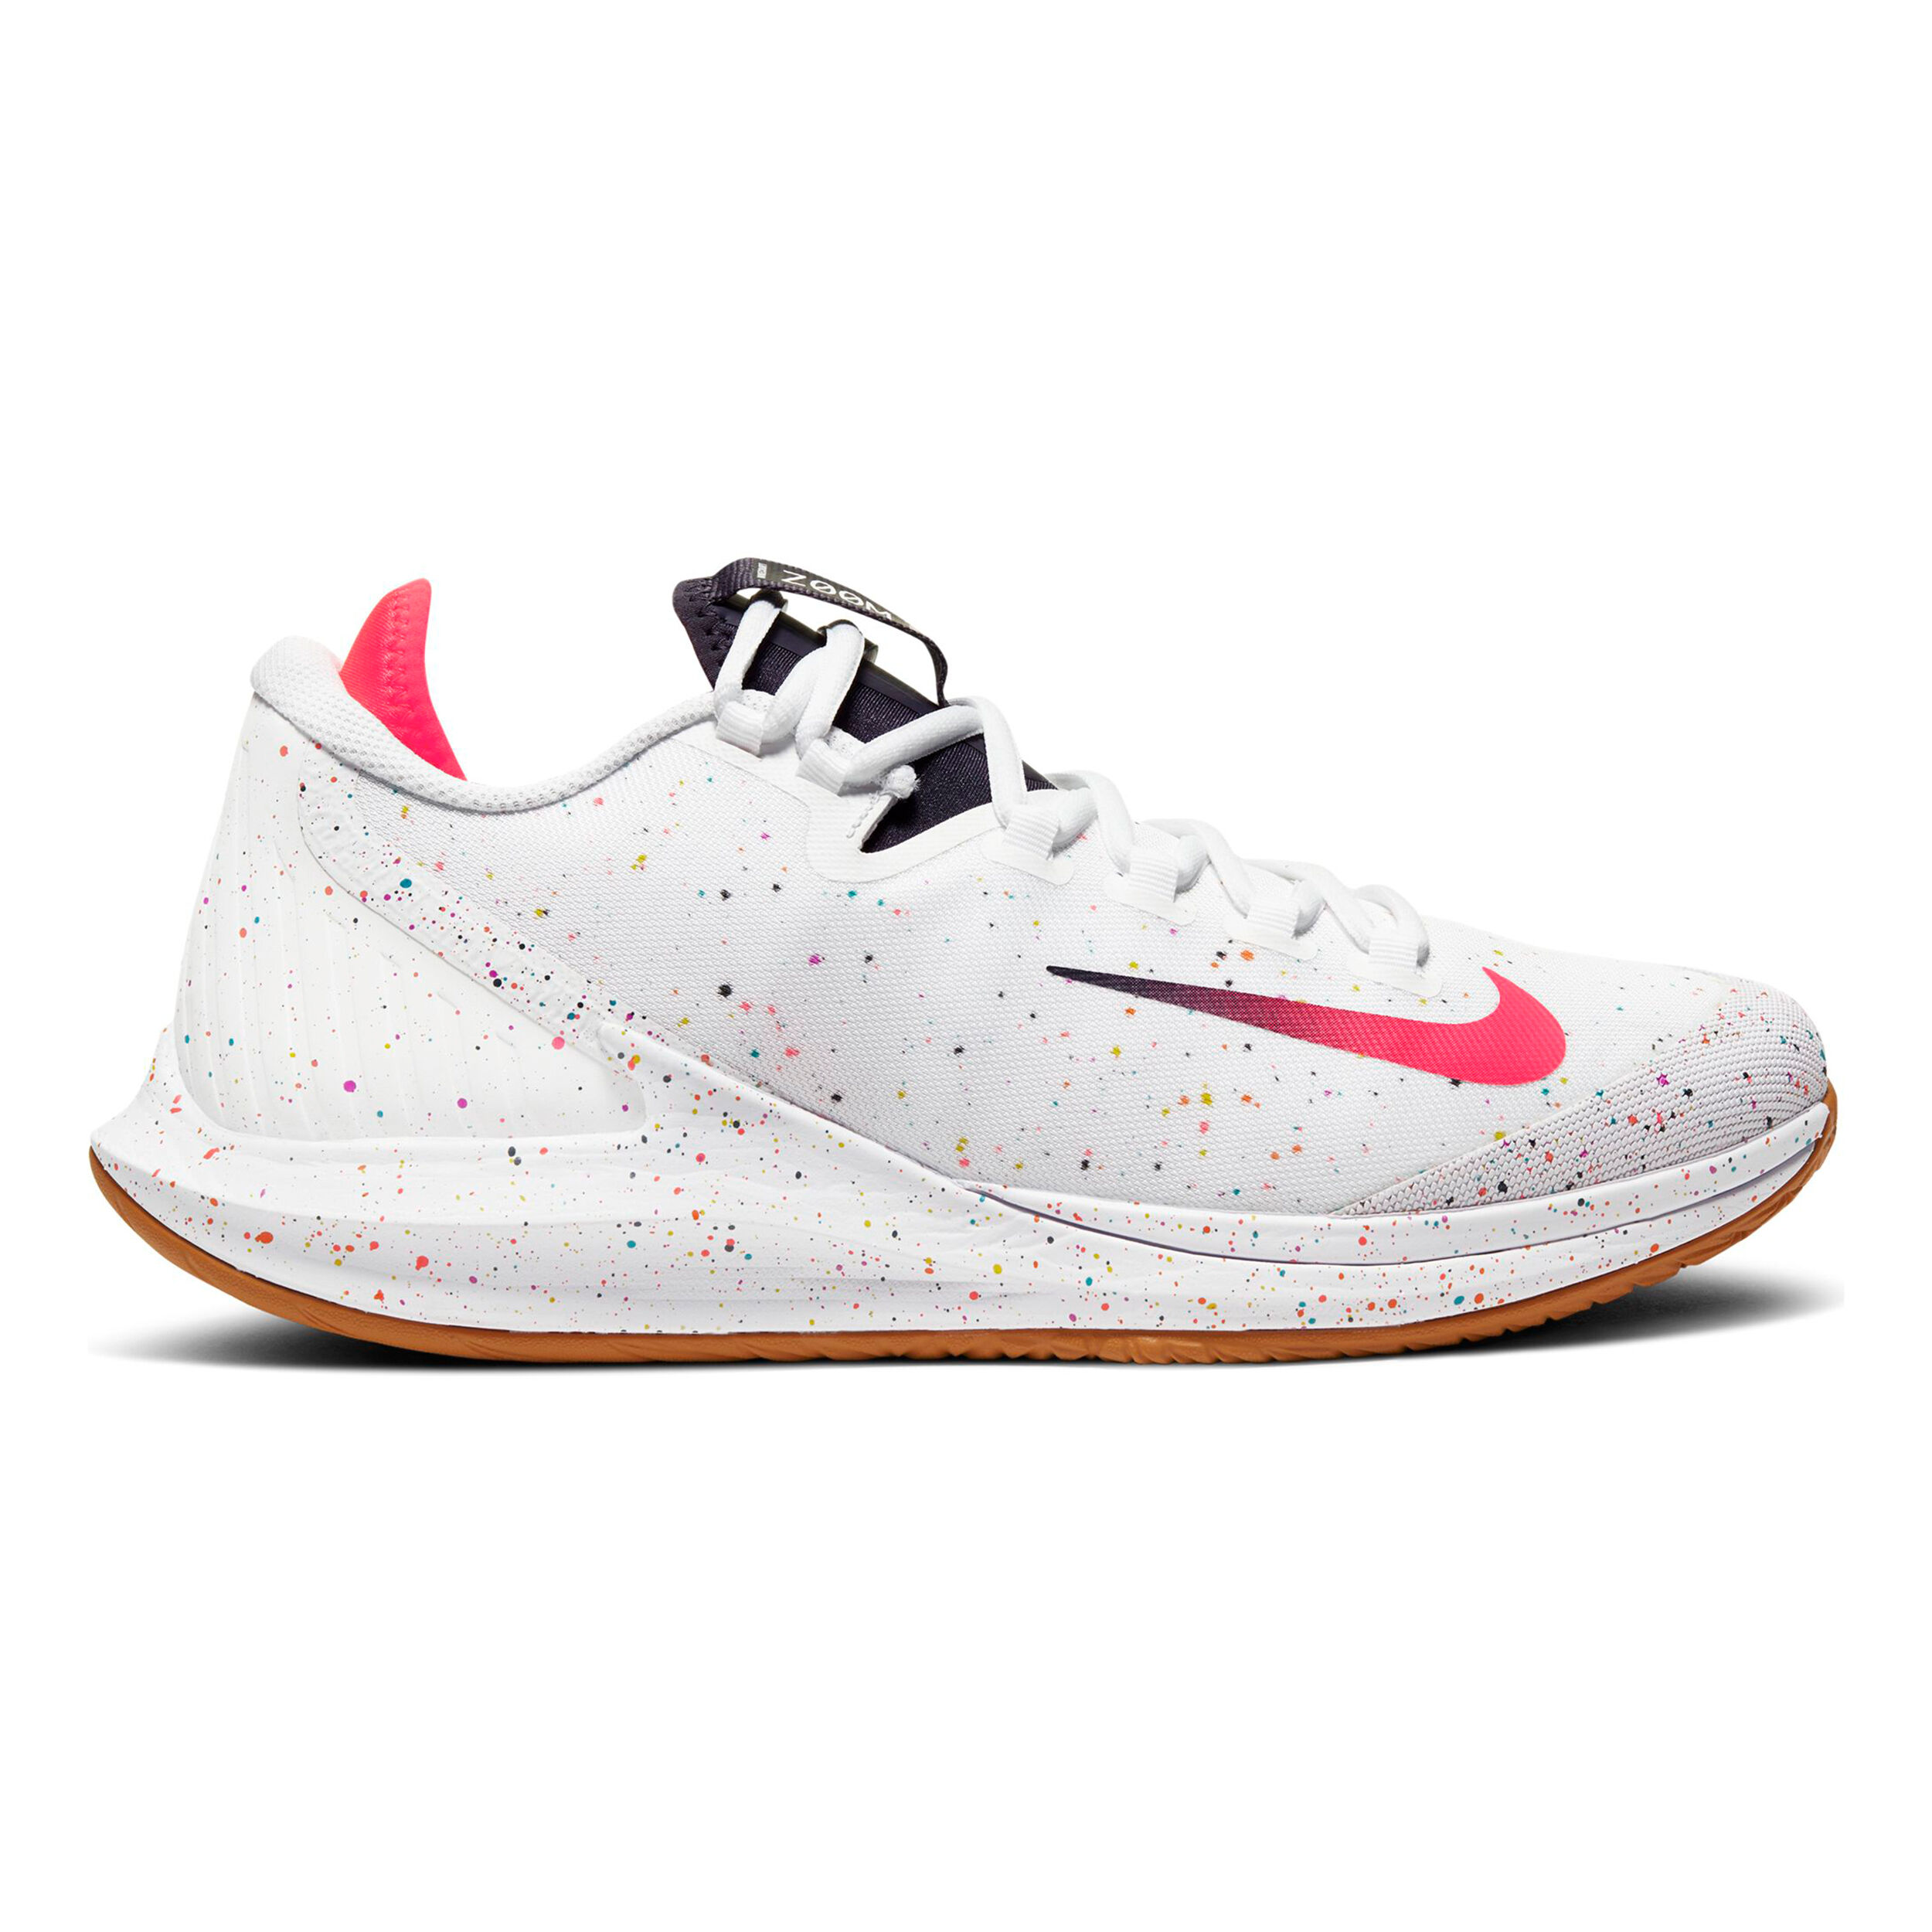 Zapatillas de tenis de Nike compra online | Tennis-Point